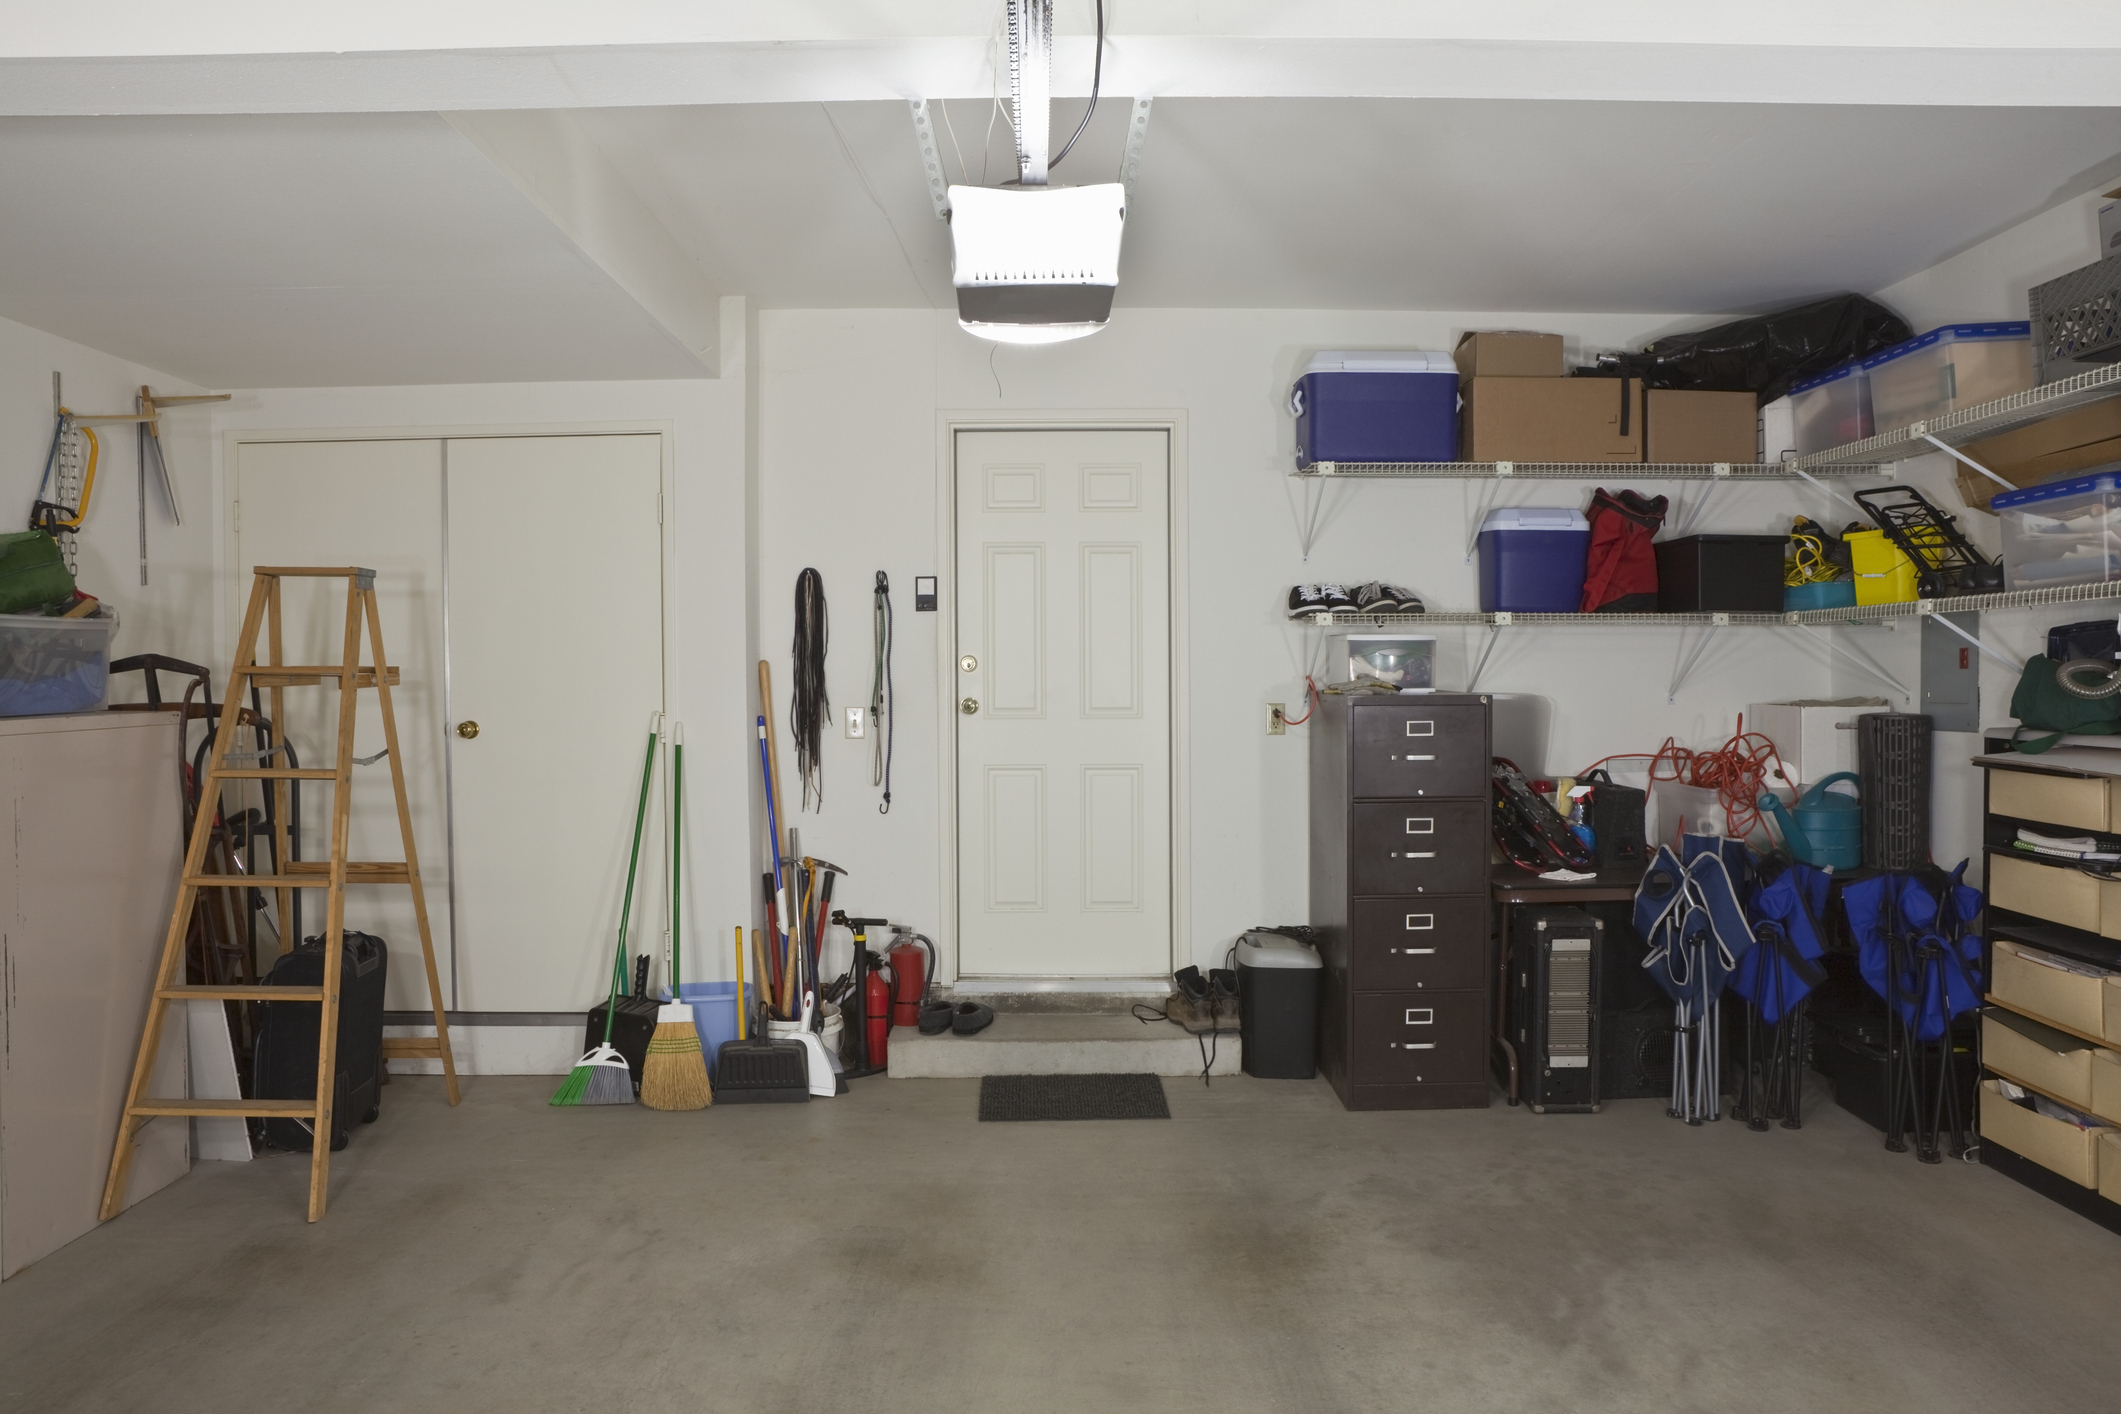 Ovih 7 stvari ne treba čuvati u garaži